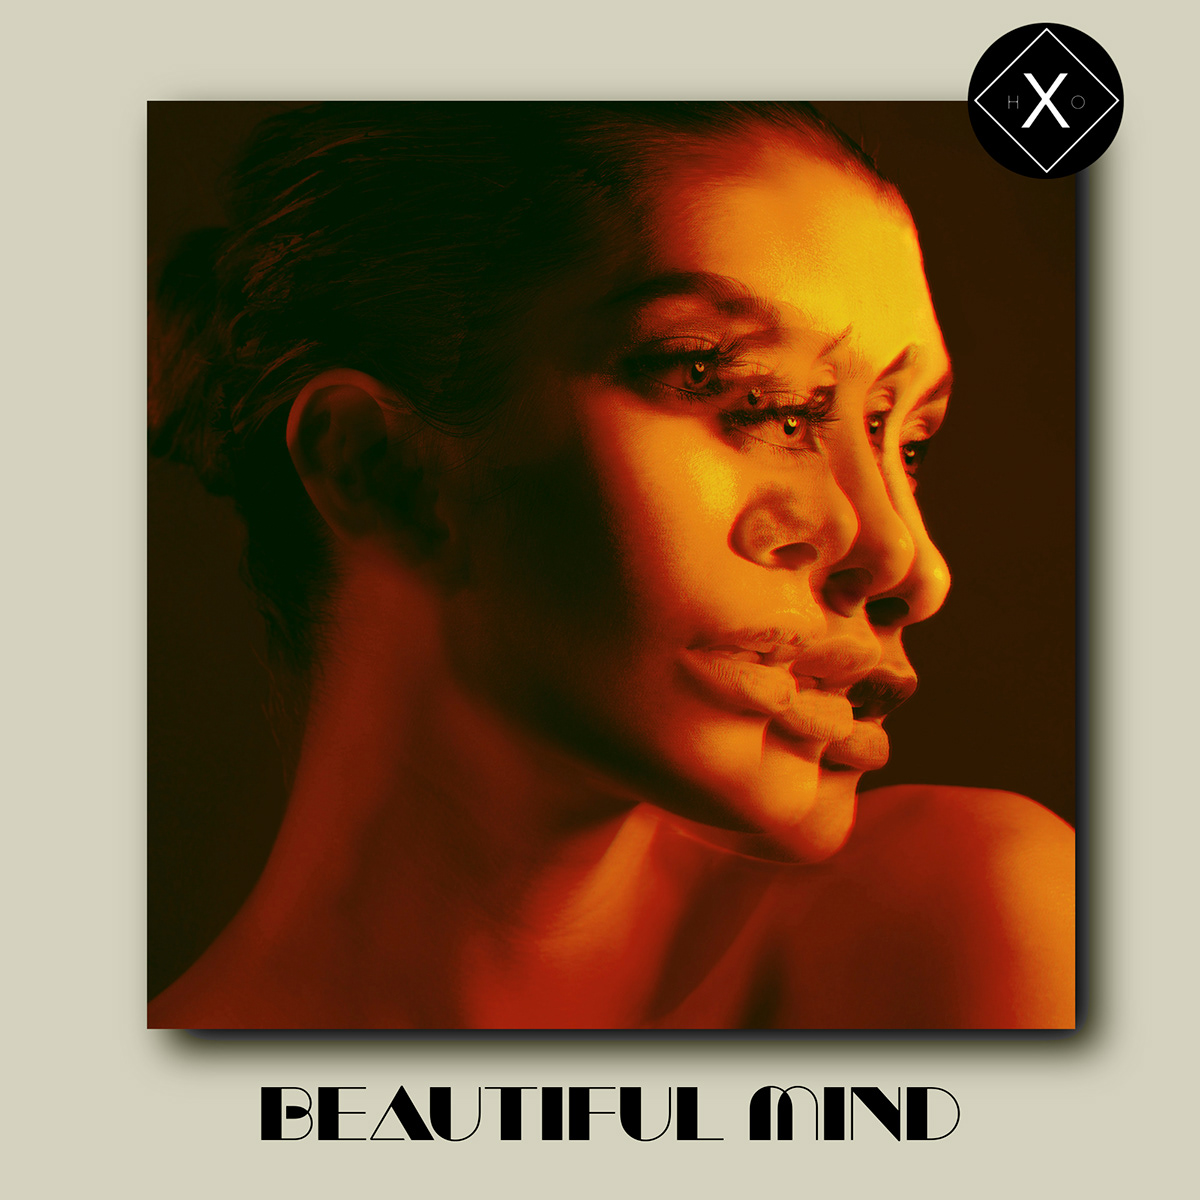 Glitch Beautiful mind Distorsioned illusion woman text Alex Garant digital Hexxio